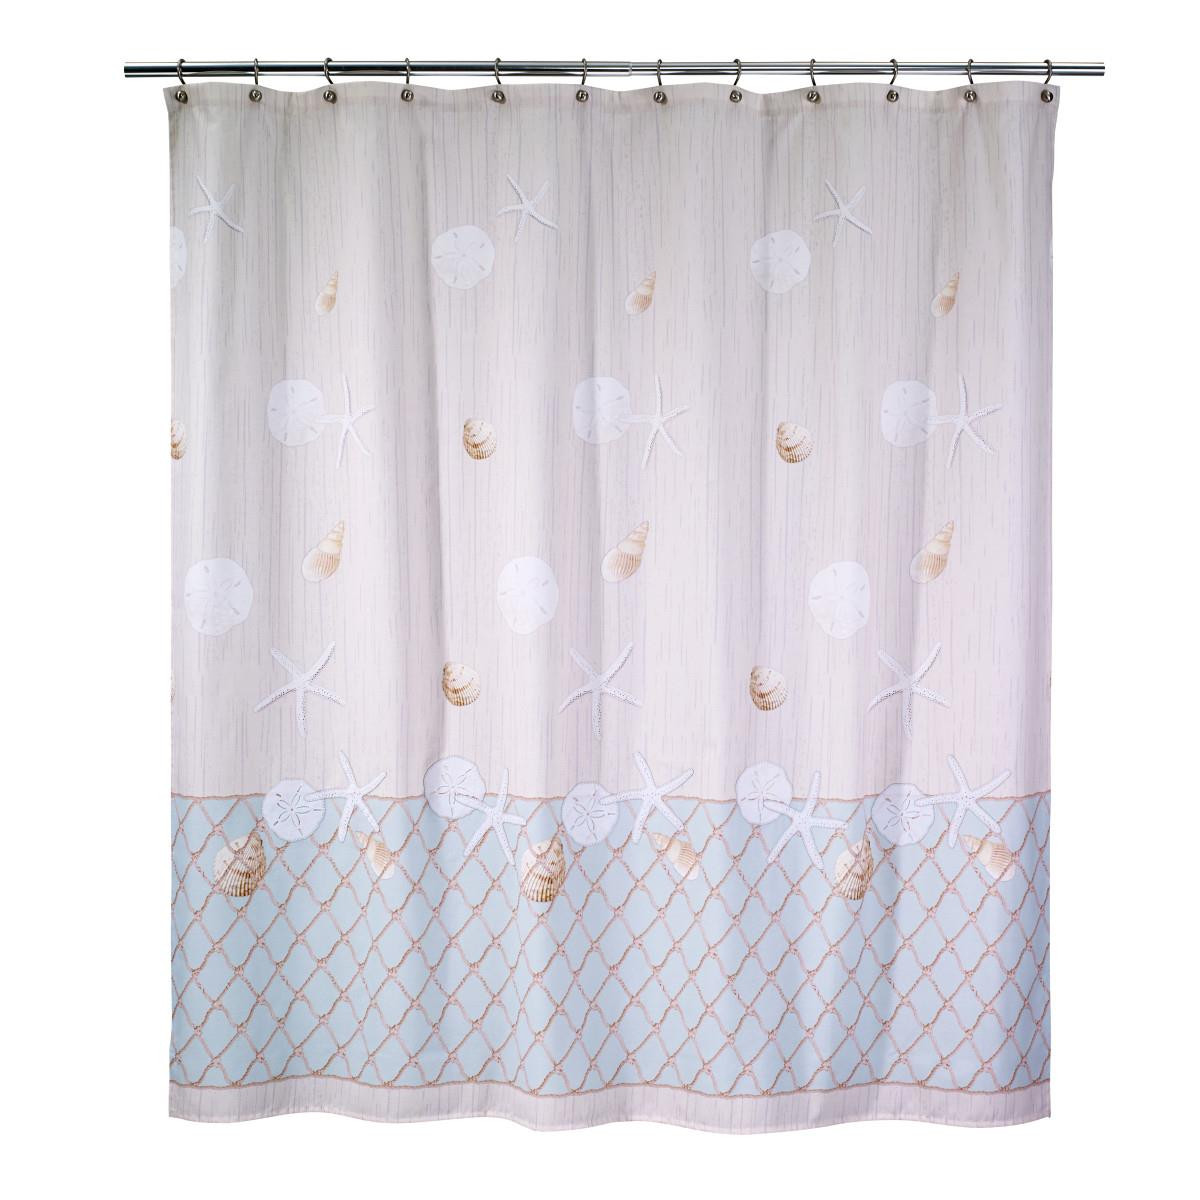 Avanti Linens Antigua Shower Curtain 